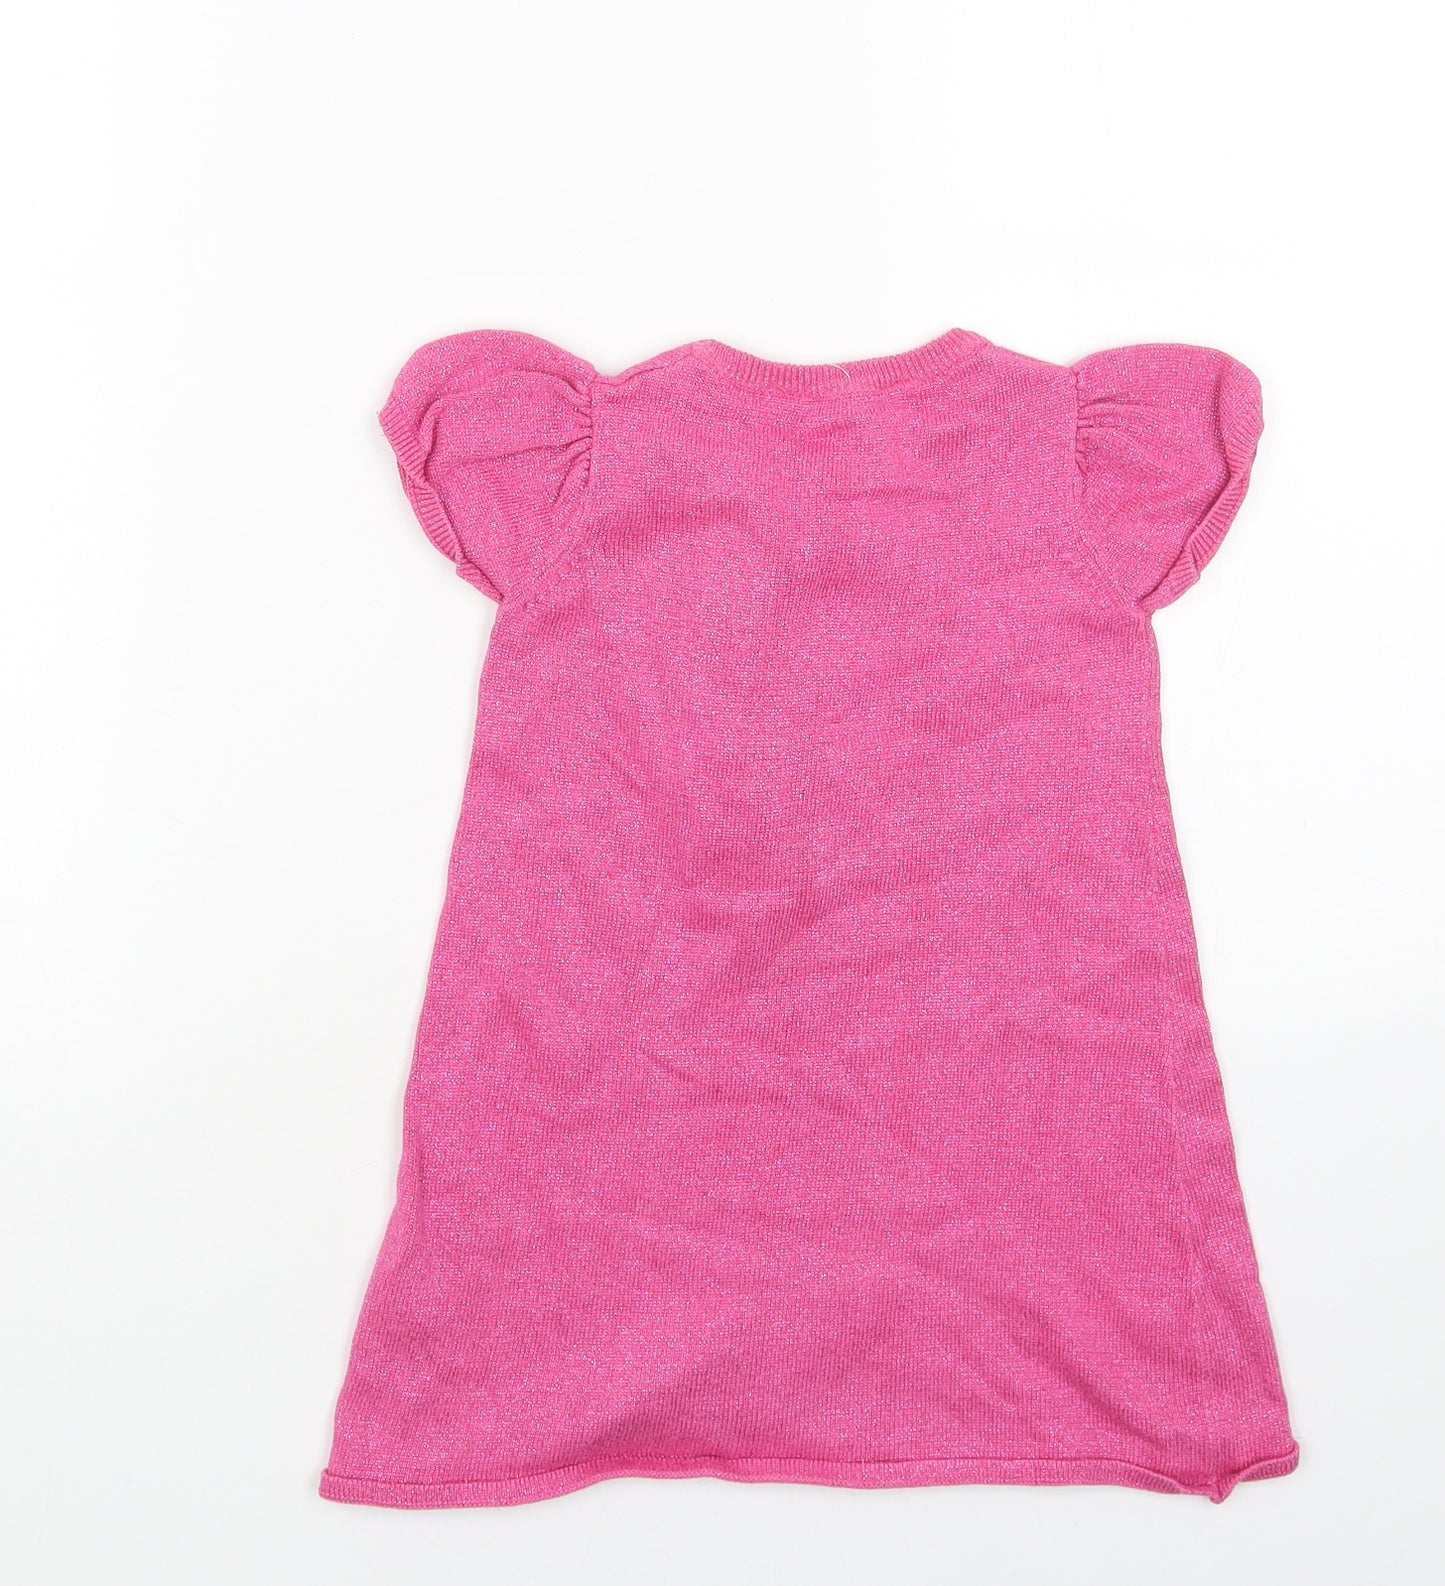 H&M Girls Pink Cotton Jumper Dress Size 2-3 Years Round Neck Pullover